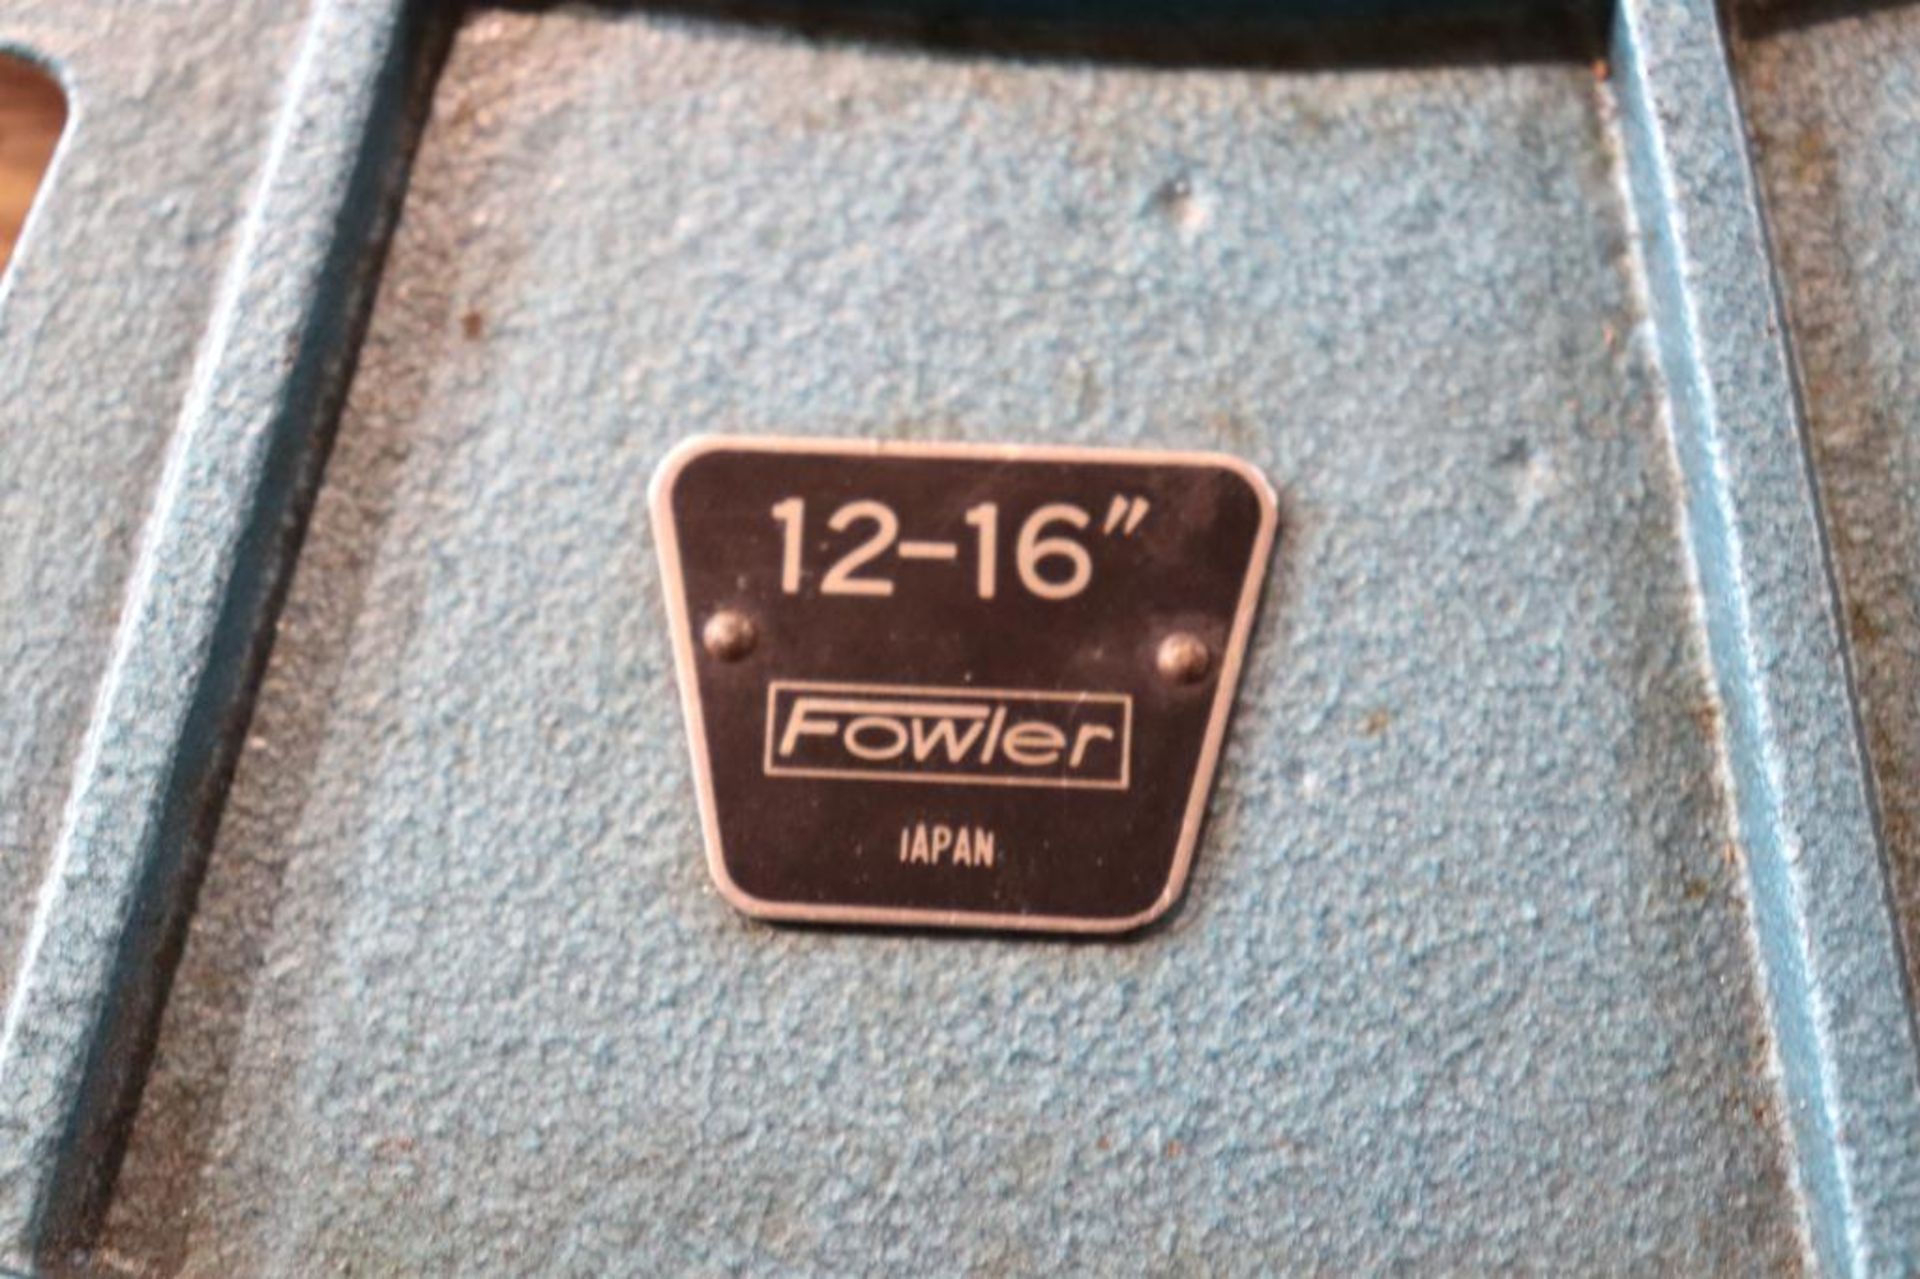 Fowler 12" - 16" micrometer - Image 3 of 8